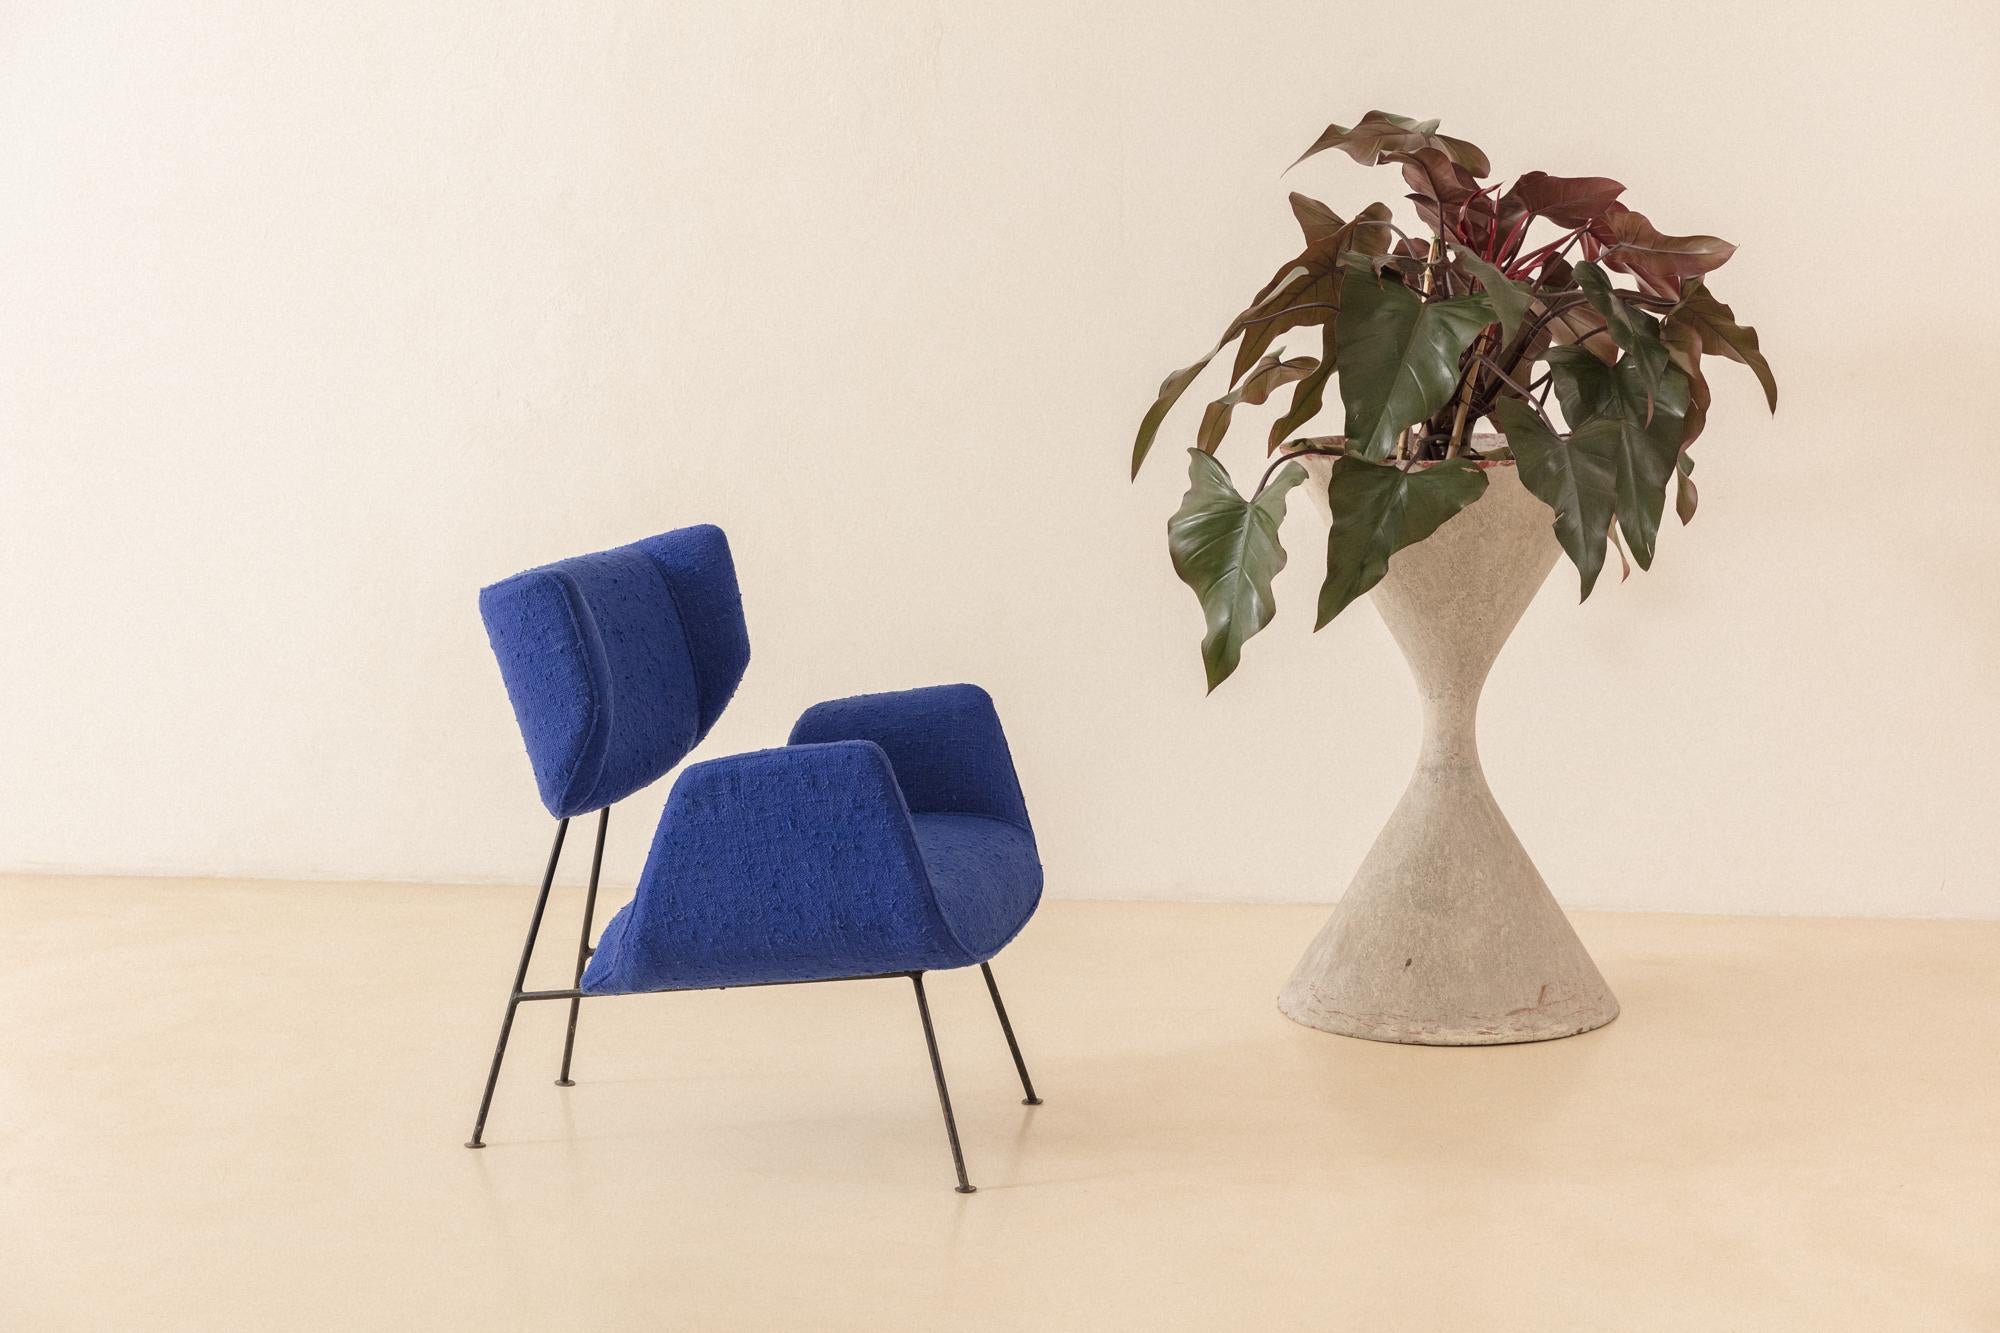 Dieser fabelhafte Sessel wurde von Martin Eisler entworfen und von Forma S.A. hergestellt. Móveis e Objetos de Arte im Jahr 1955. Das Stück besteht aus einer Eisenstruktur mit Messingspitzen und zwei unabhängigen Volumen für Sitz und Rückenlehne,